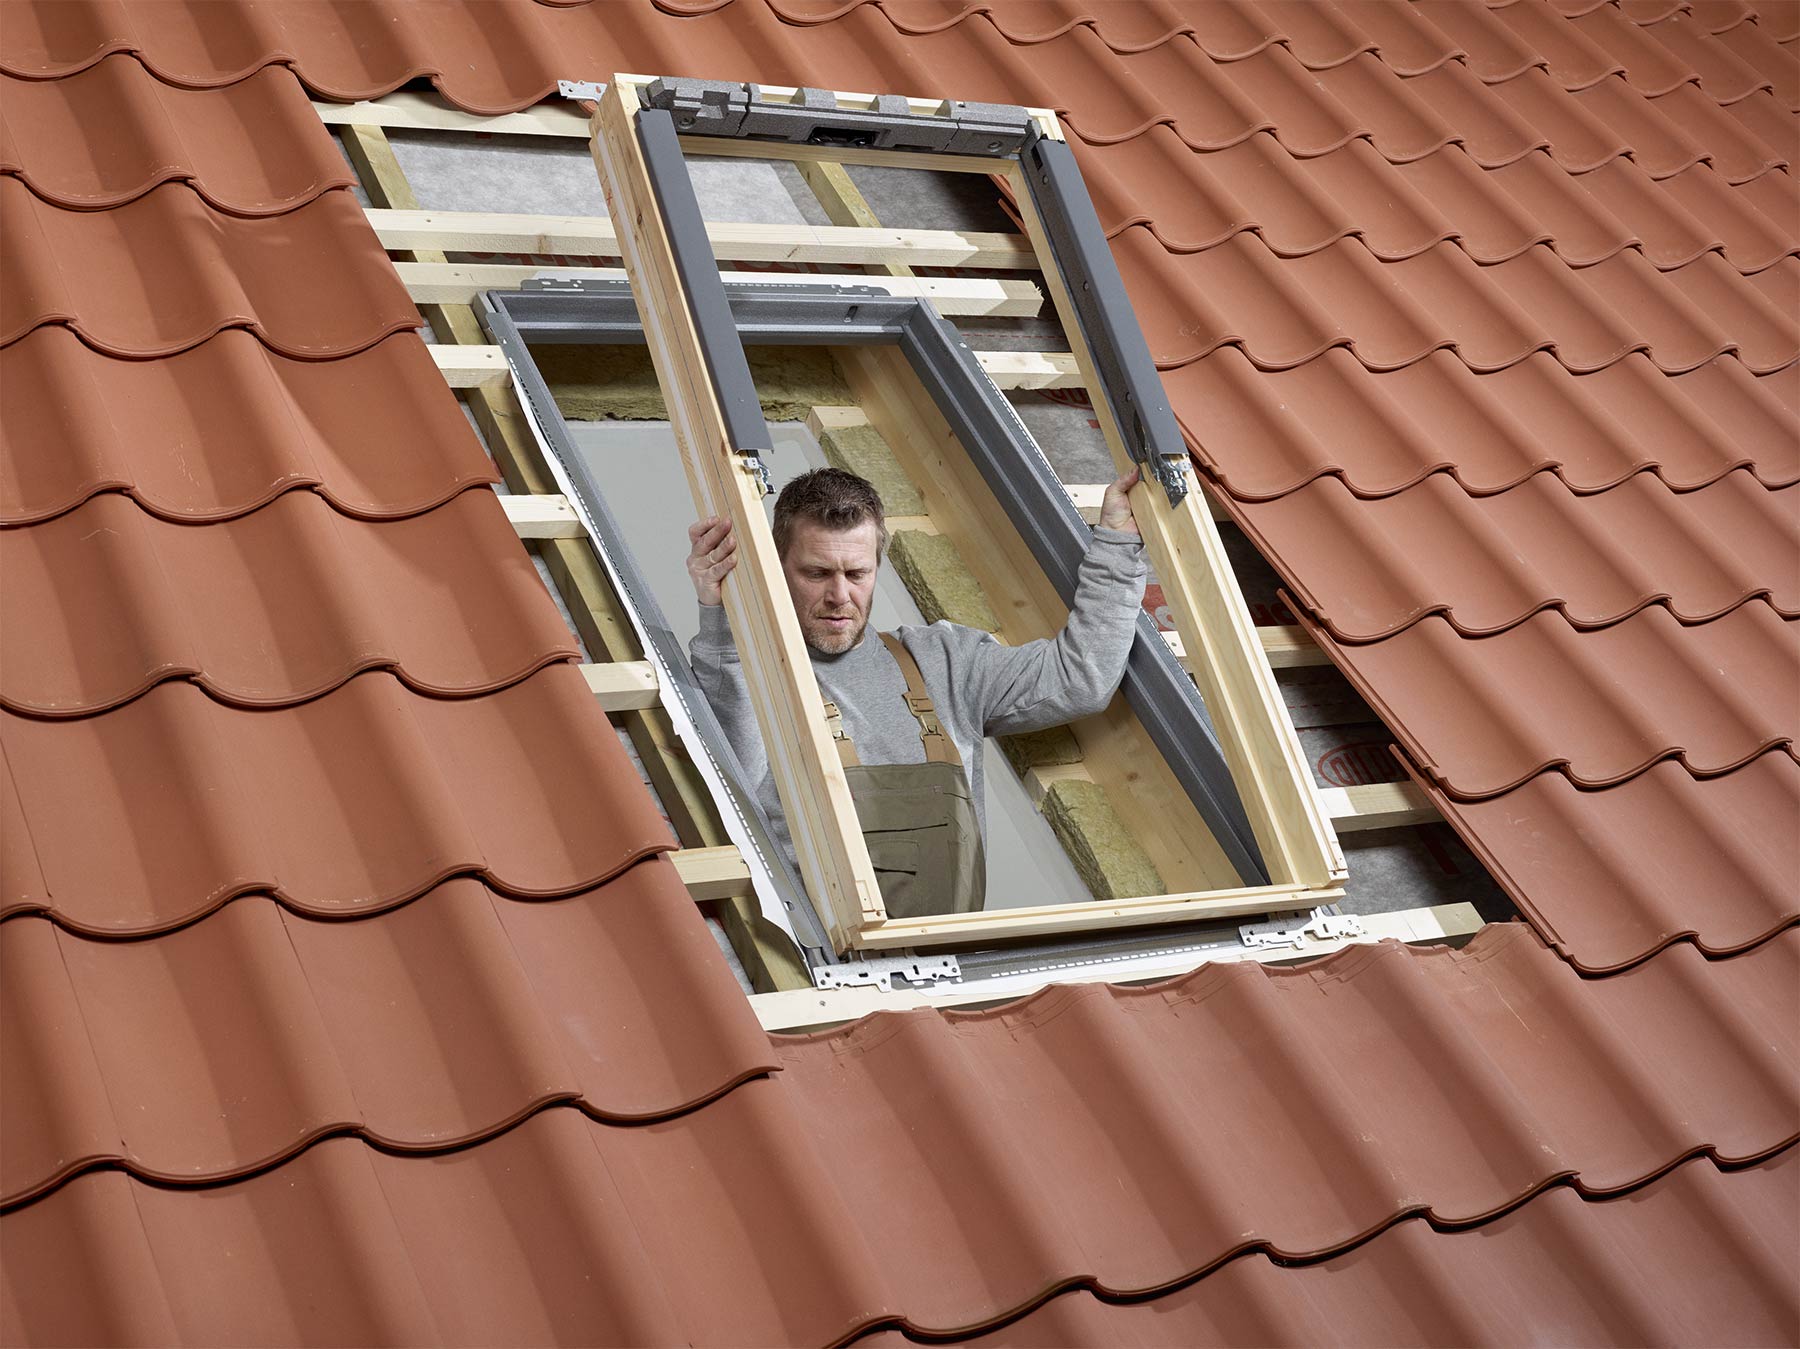 Na zabezpečenie lepšej vonkajšej izolácie okna je vhodné použiť tepelnoizolačnú súpravu. Obsahuje izolačný rám na zabezpečenie lepšej izolácie medzi okenným rámom a strechou, golier s plsteným podkladom a samonosný drenážny žliabok. Tepelnoizolačný rám sa osadí (na podporné laty) do pripraveného otvoru v strešnej konštrukcii.